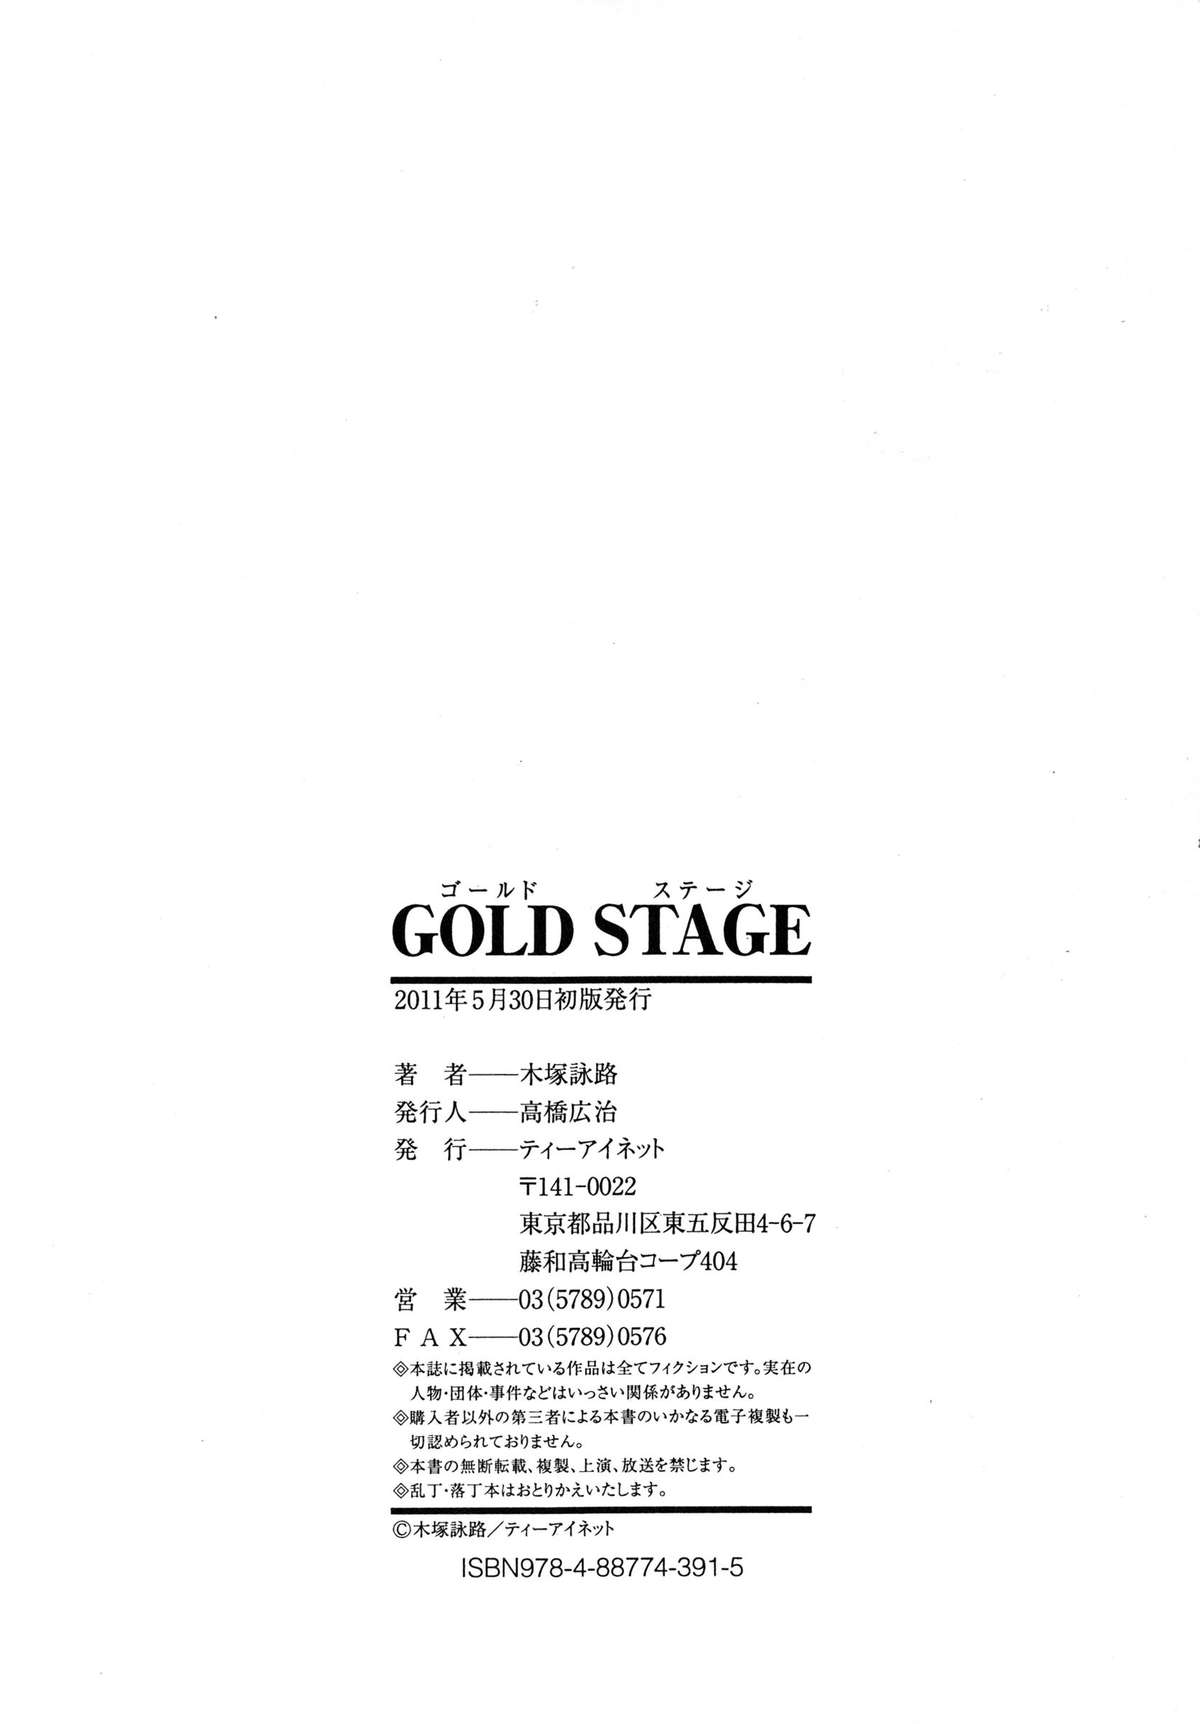 [木塚詠路] GOLD STAGE